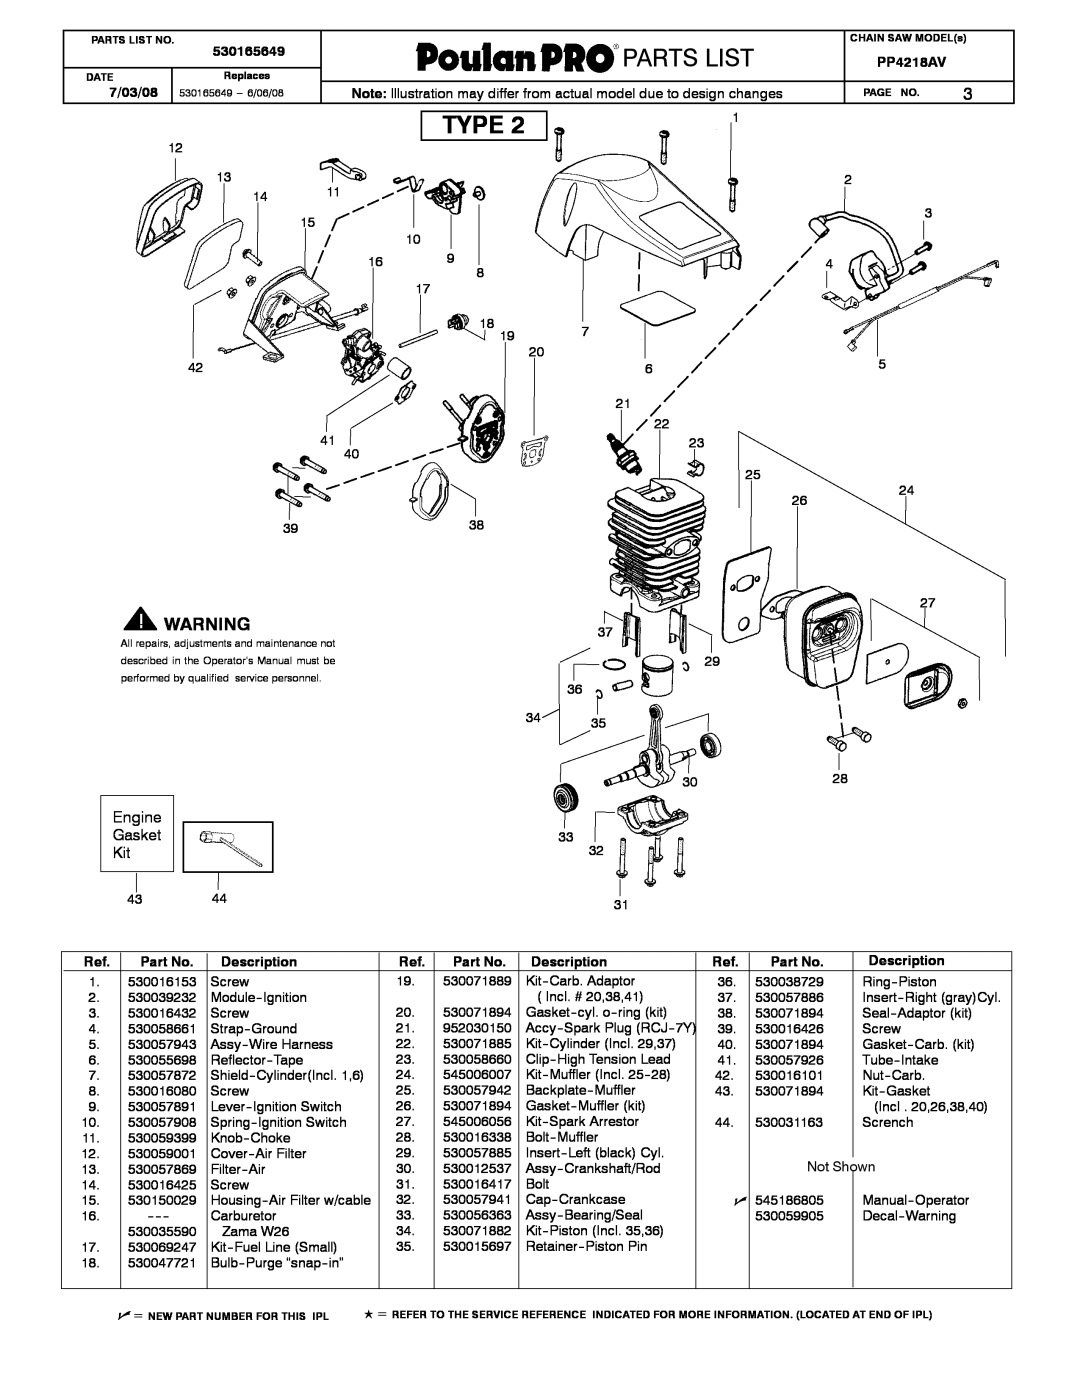 Poulan 530165649 manual Weed Eaterrrr, Partslist, Type, Engine Gasket Kit, Description 